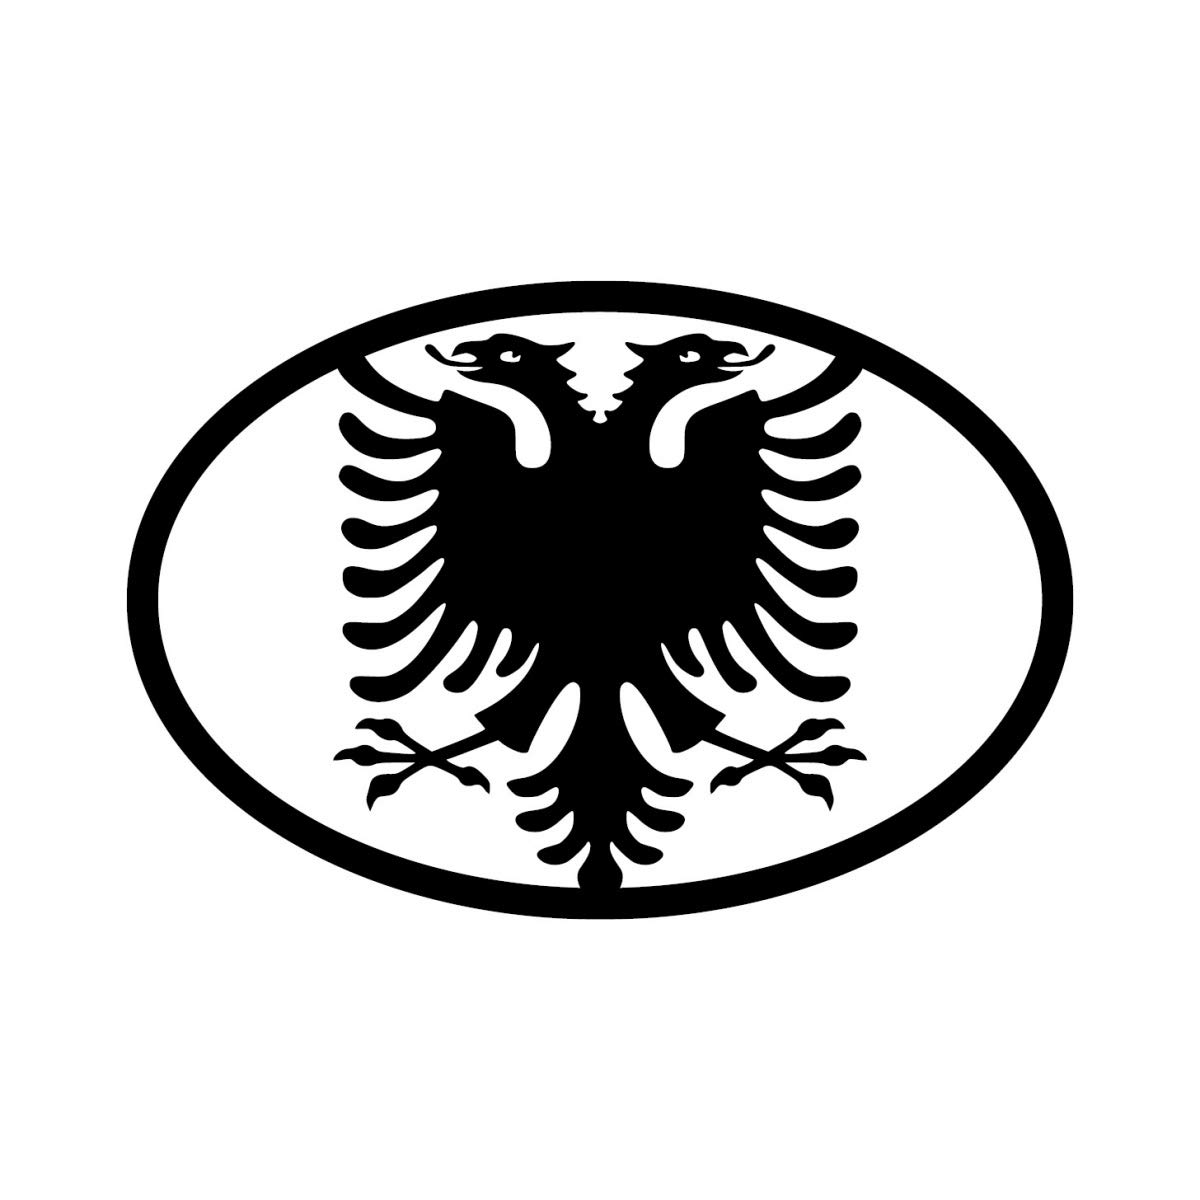 Shirtblaster Albanien Adler Aufkleber Autoaufkleber Sticker 15cm x 10cm Farbe Schwarz von Shirtblaster